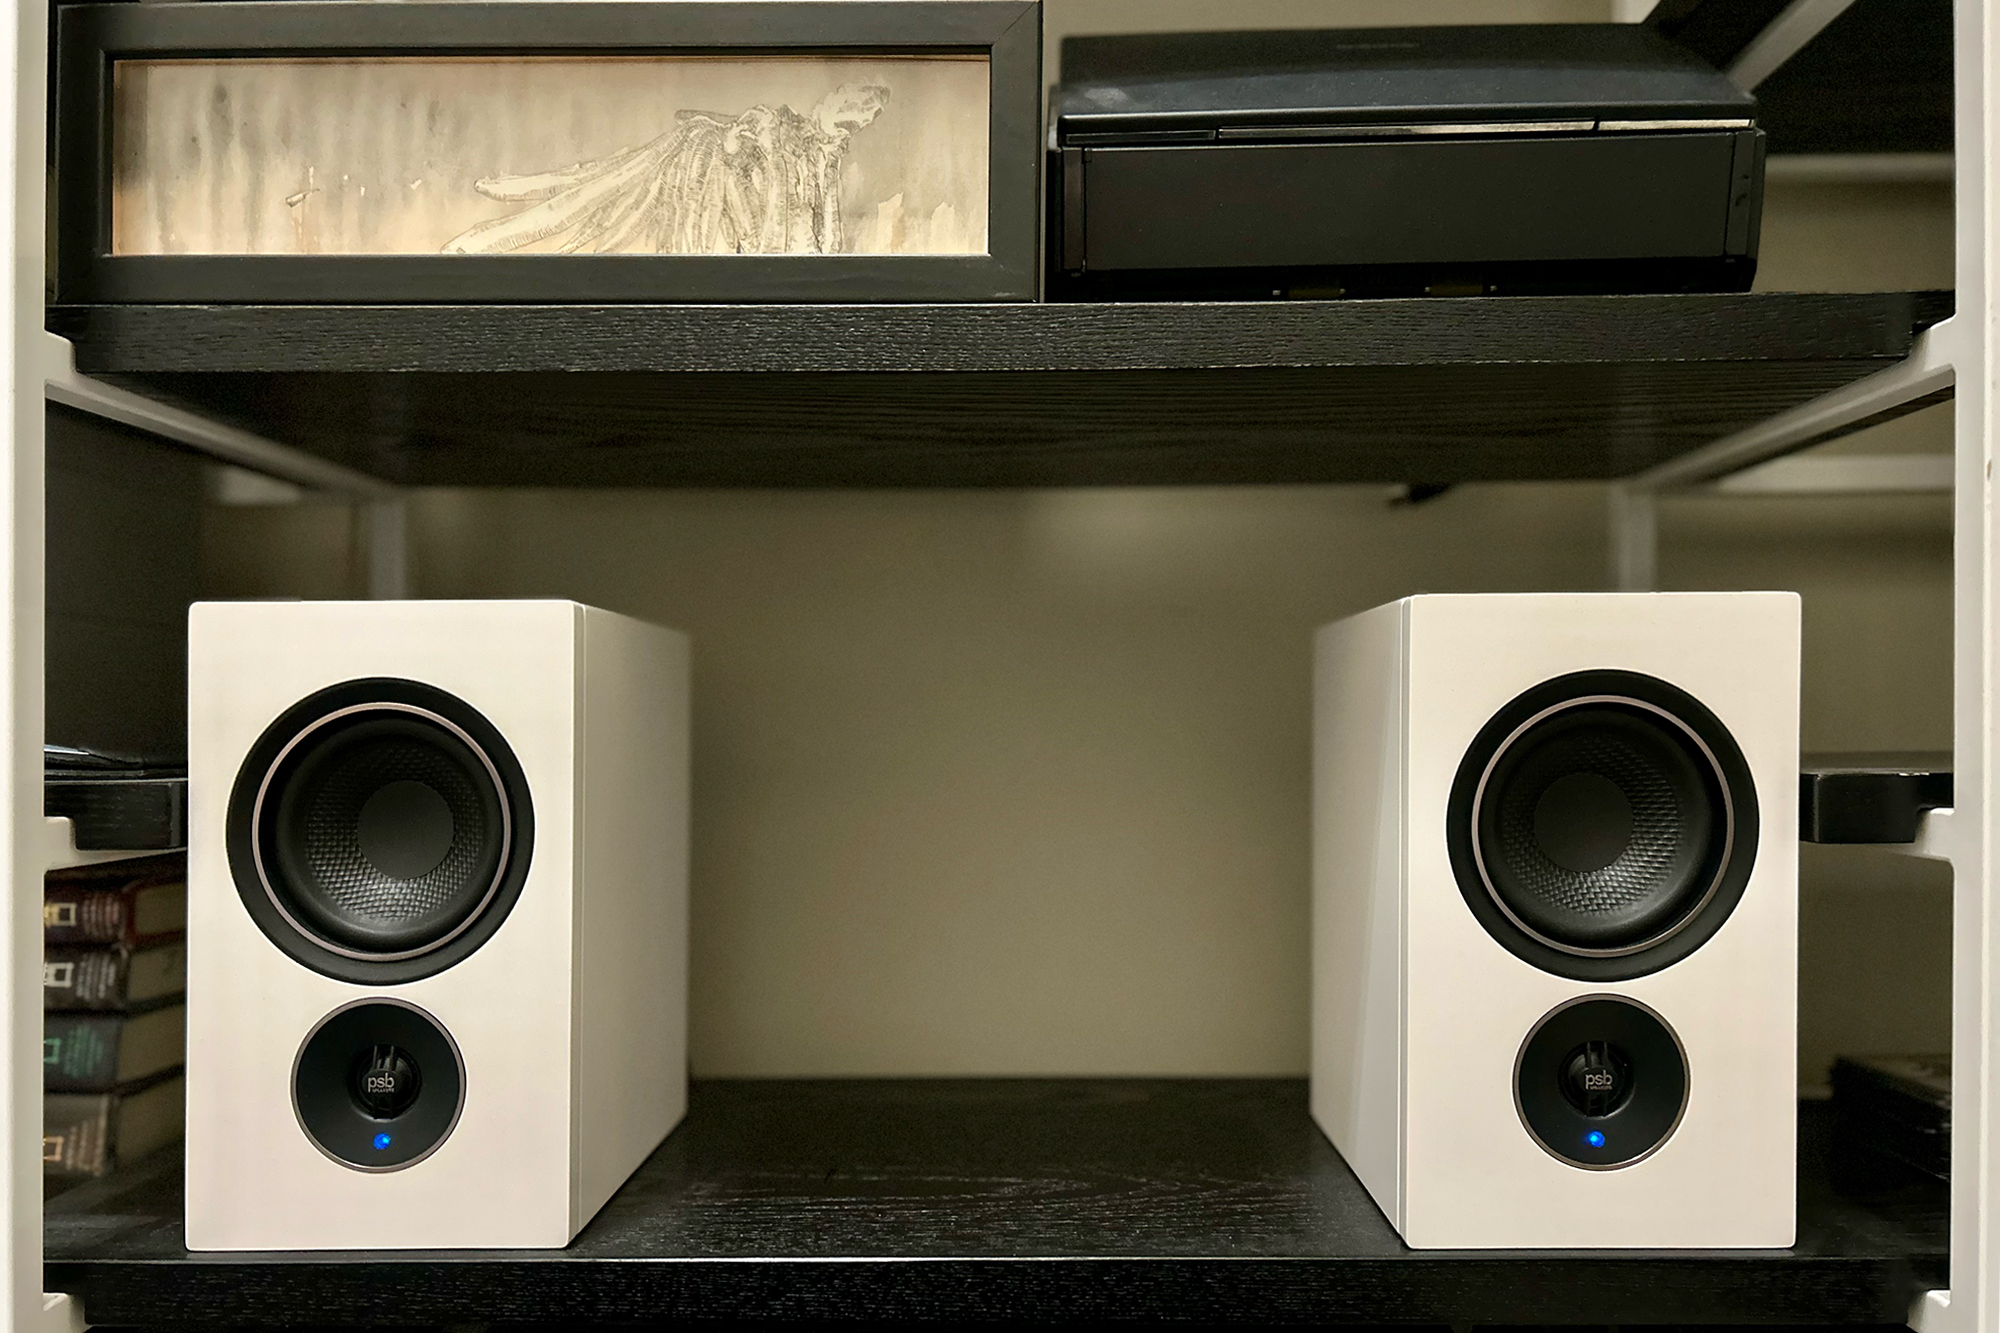 White PSB Alpha iQ speakers on a black shelf